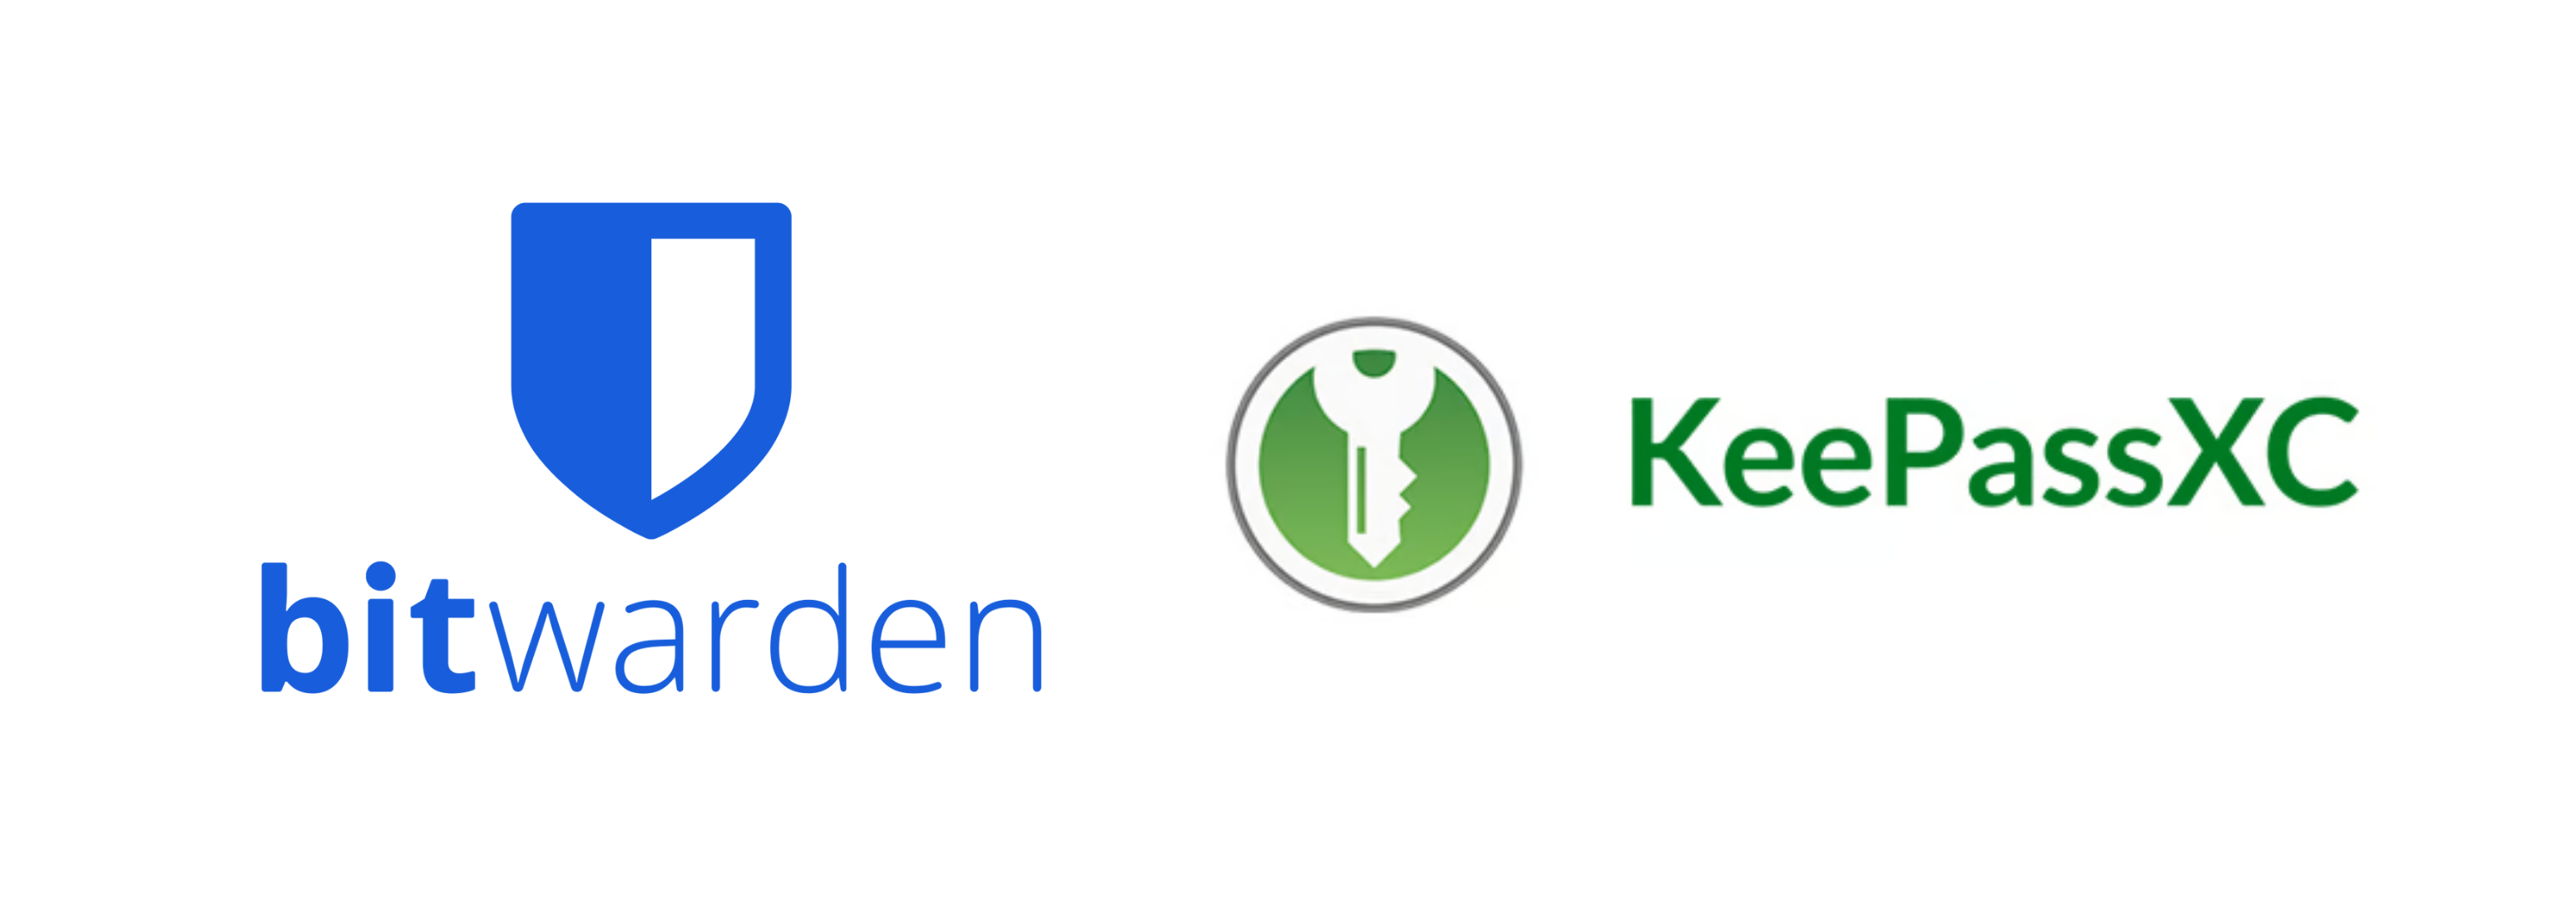 Logos der Passwortmanager: Bitwarden und KeePassVC